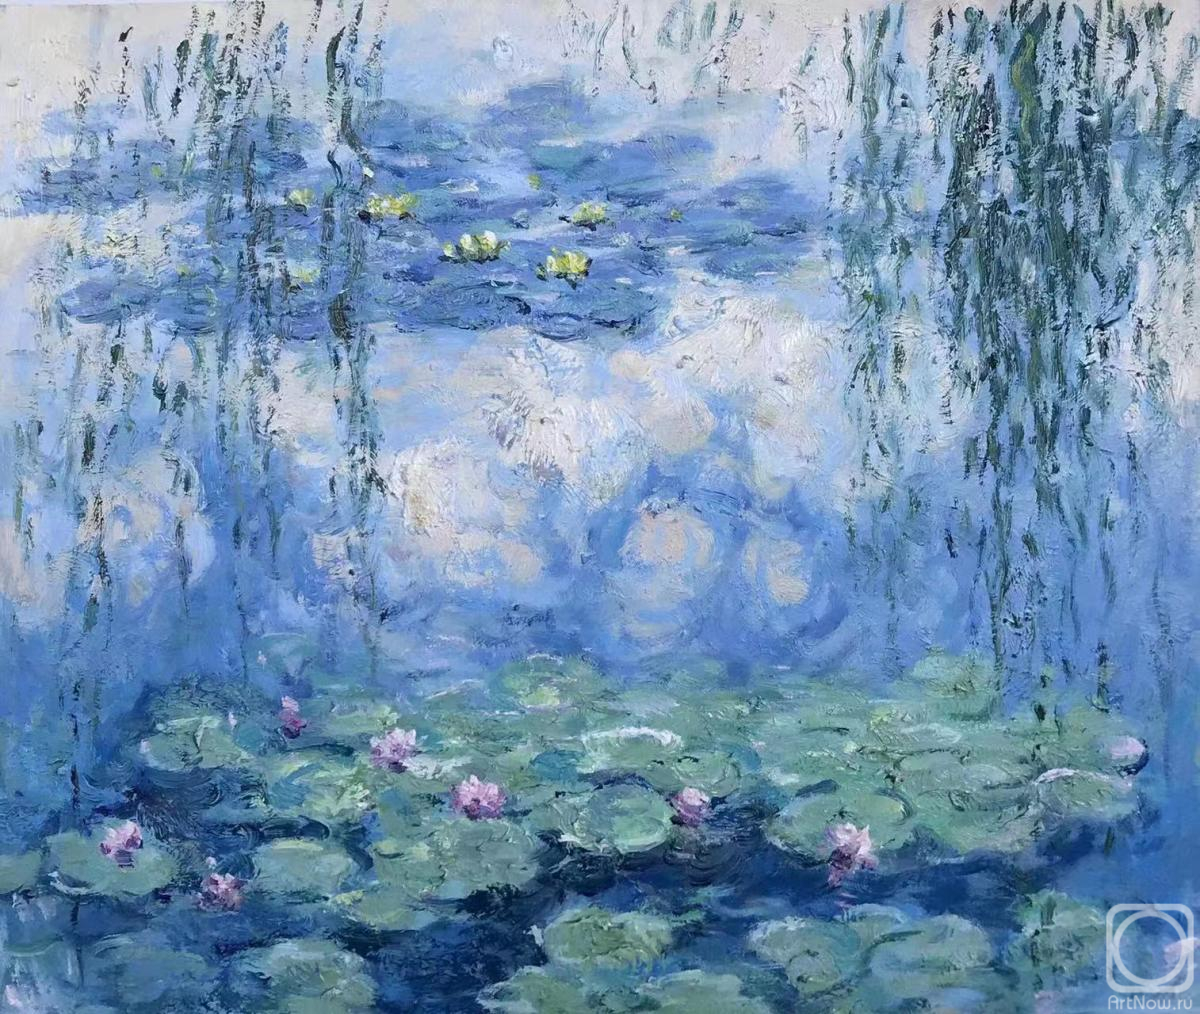 Kamskij Savelij. Copy of Claude Monet's painting Water Lilies, N39